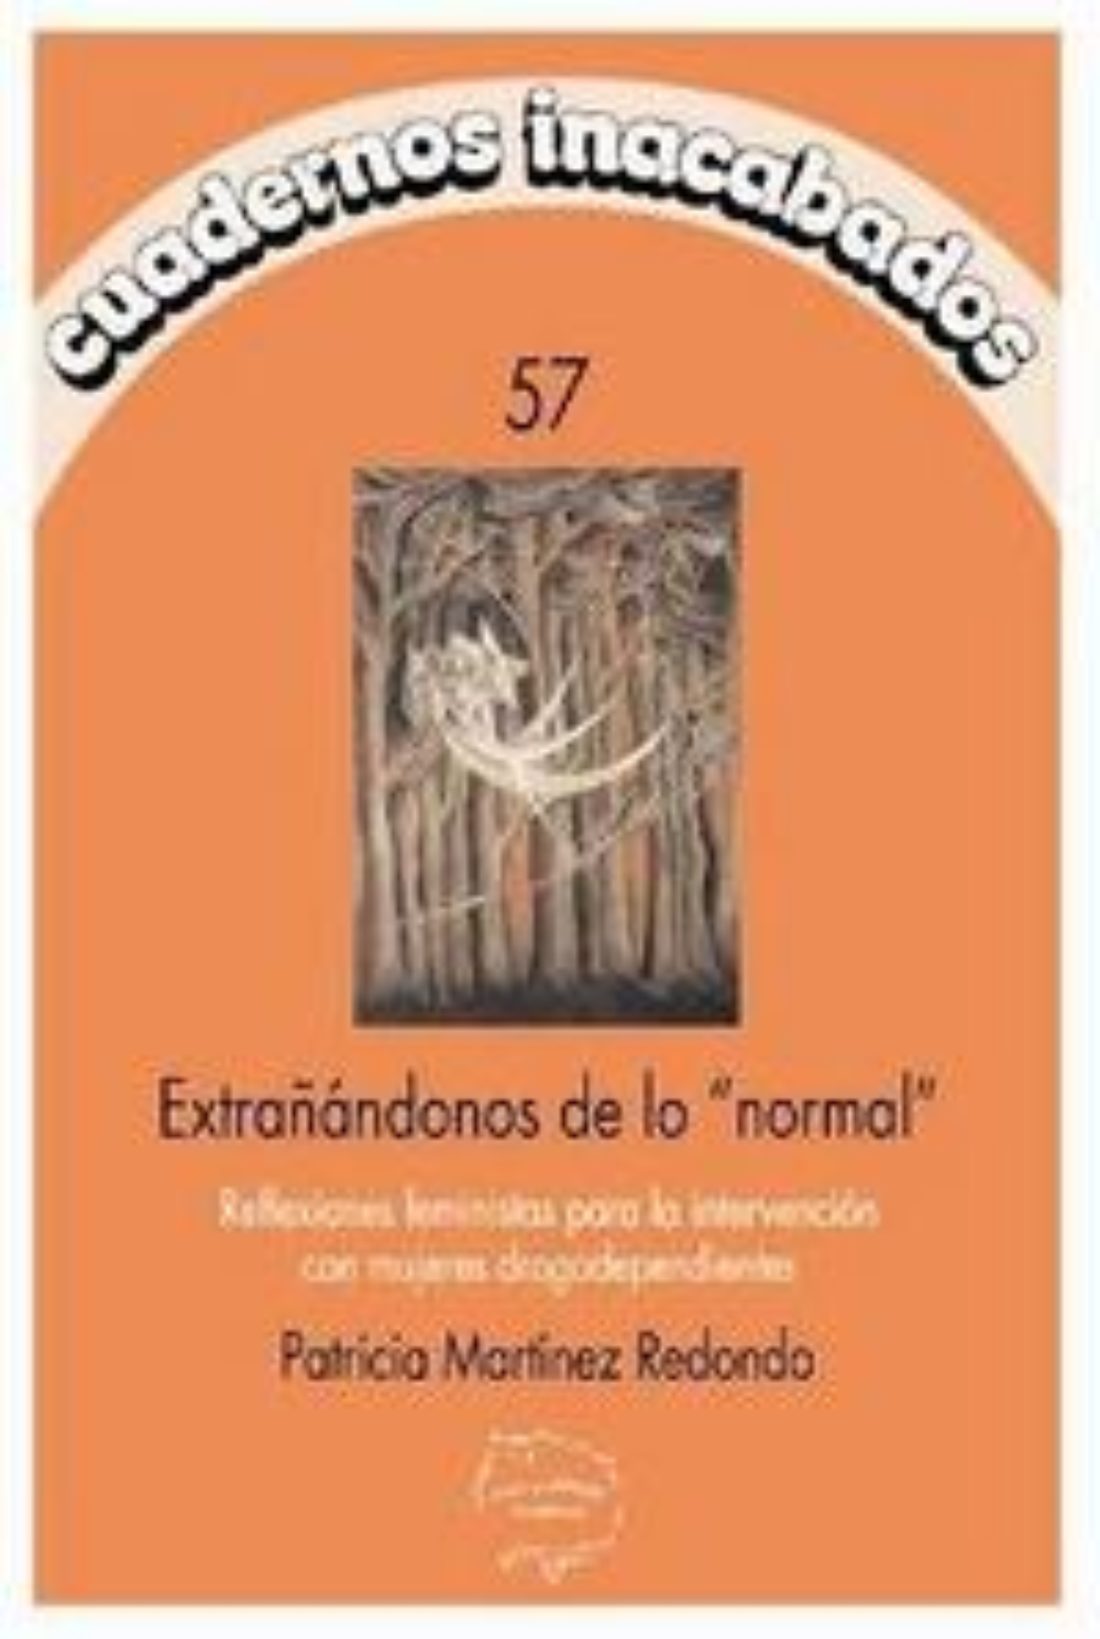 28 oct, Madrid : presentación del libro «Extrañándonos de lo normal»